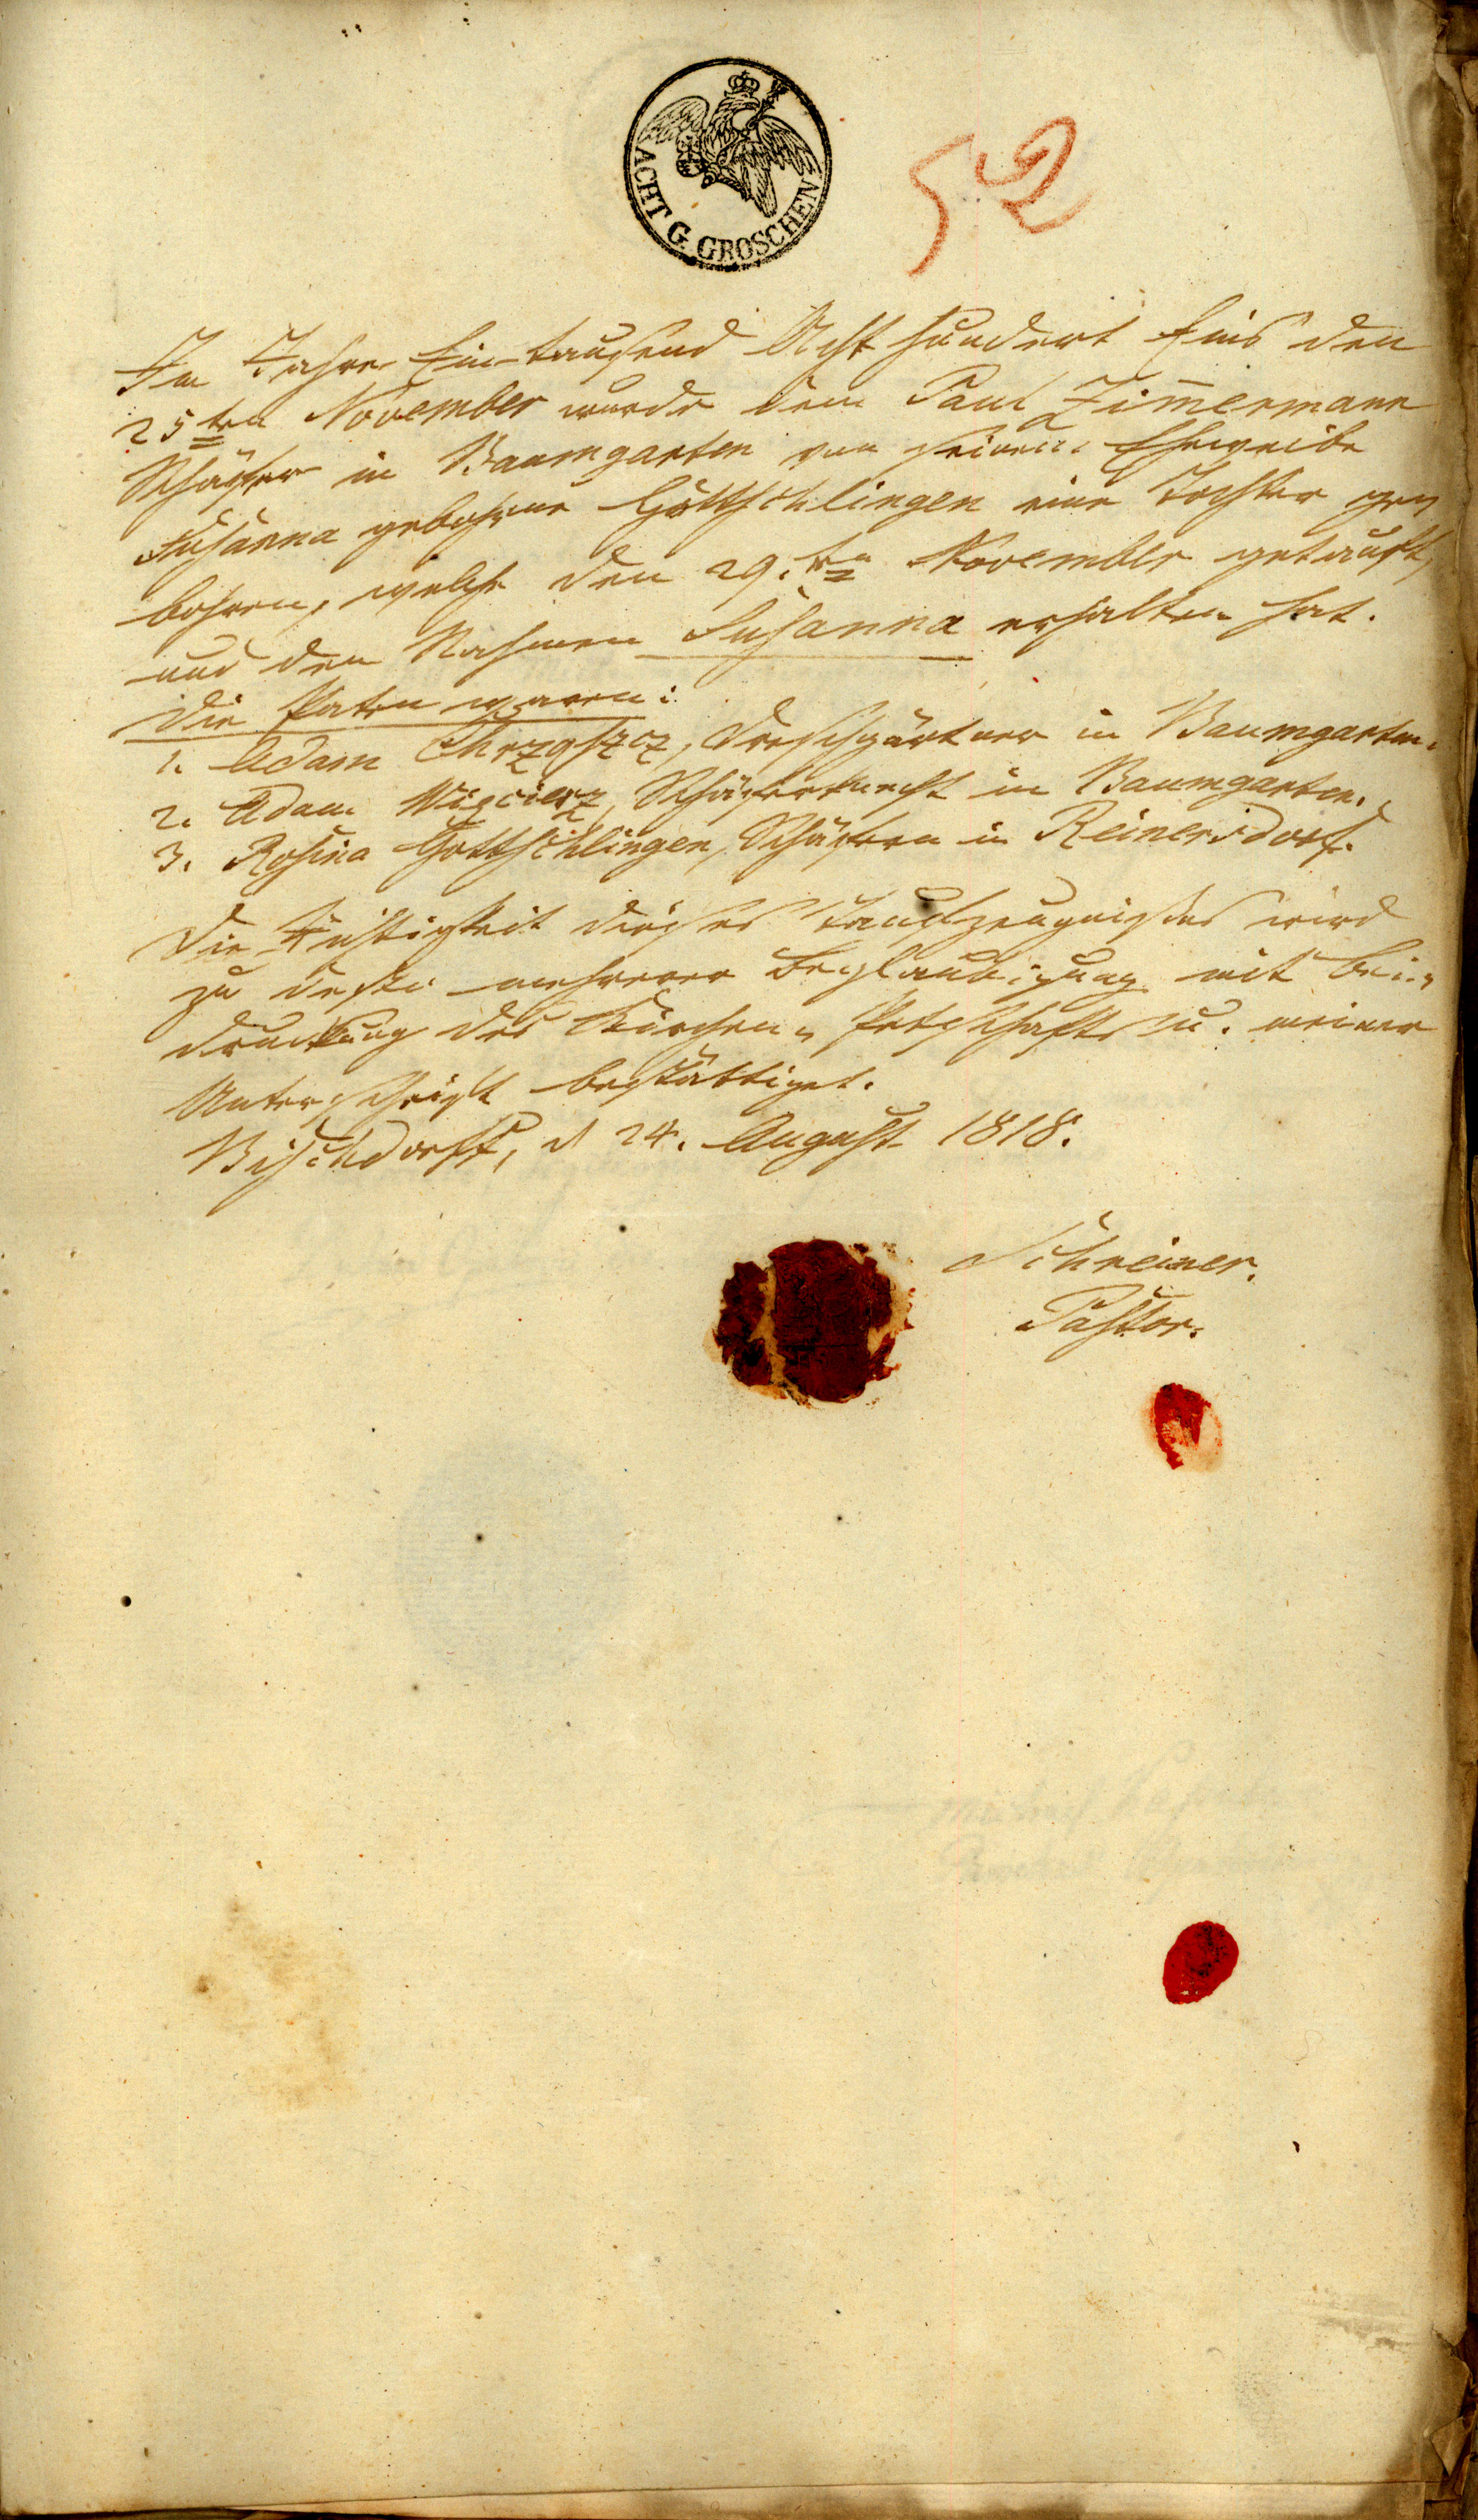 Odpis aktu chrztu Zuzanny Zimmermann z alegat (24 AUG 1818)